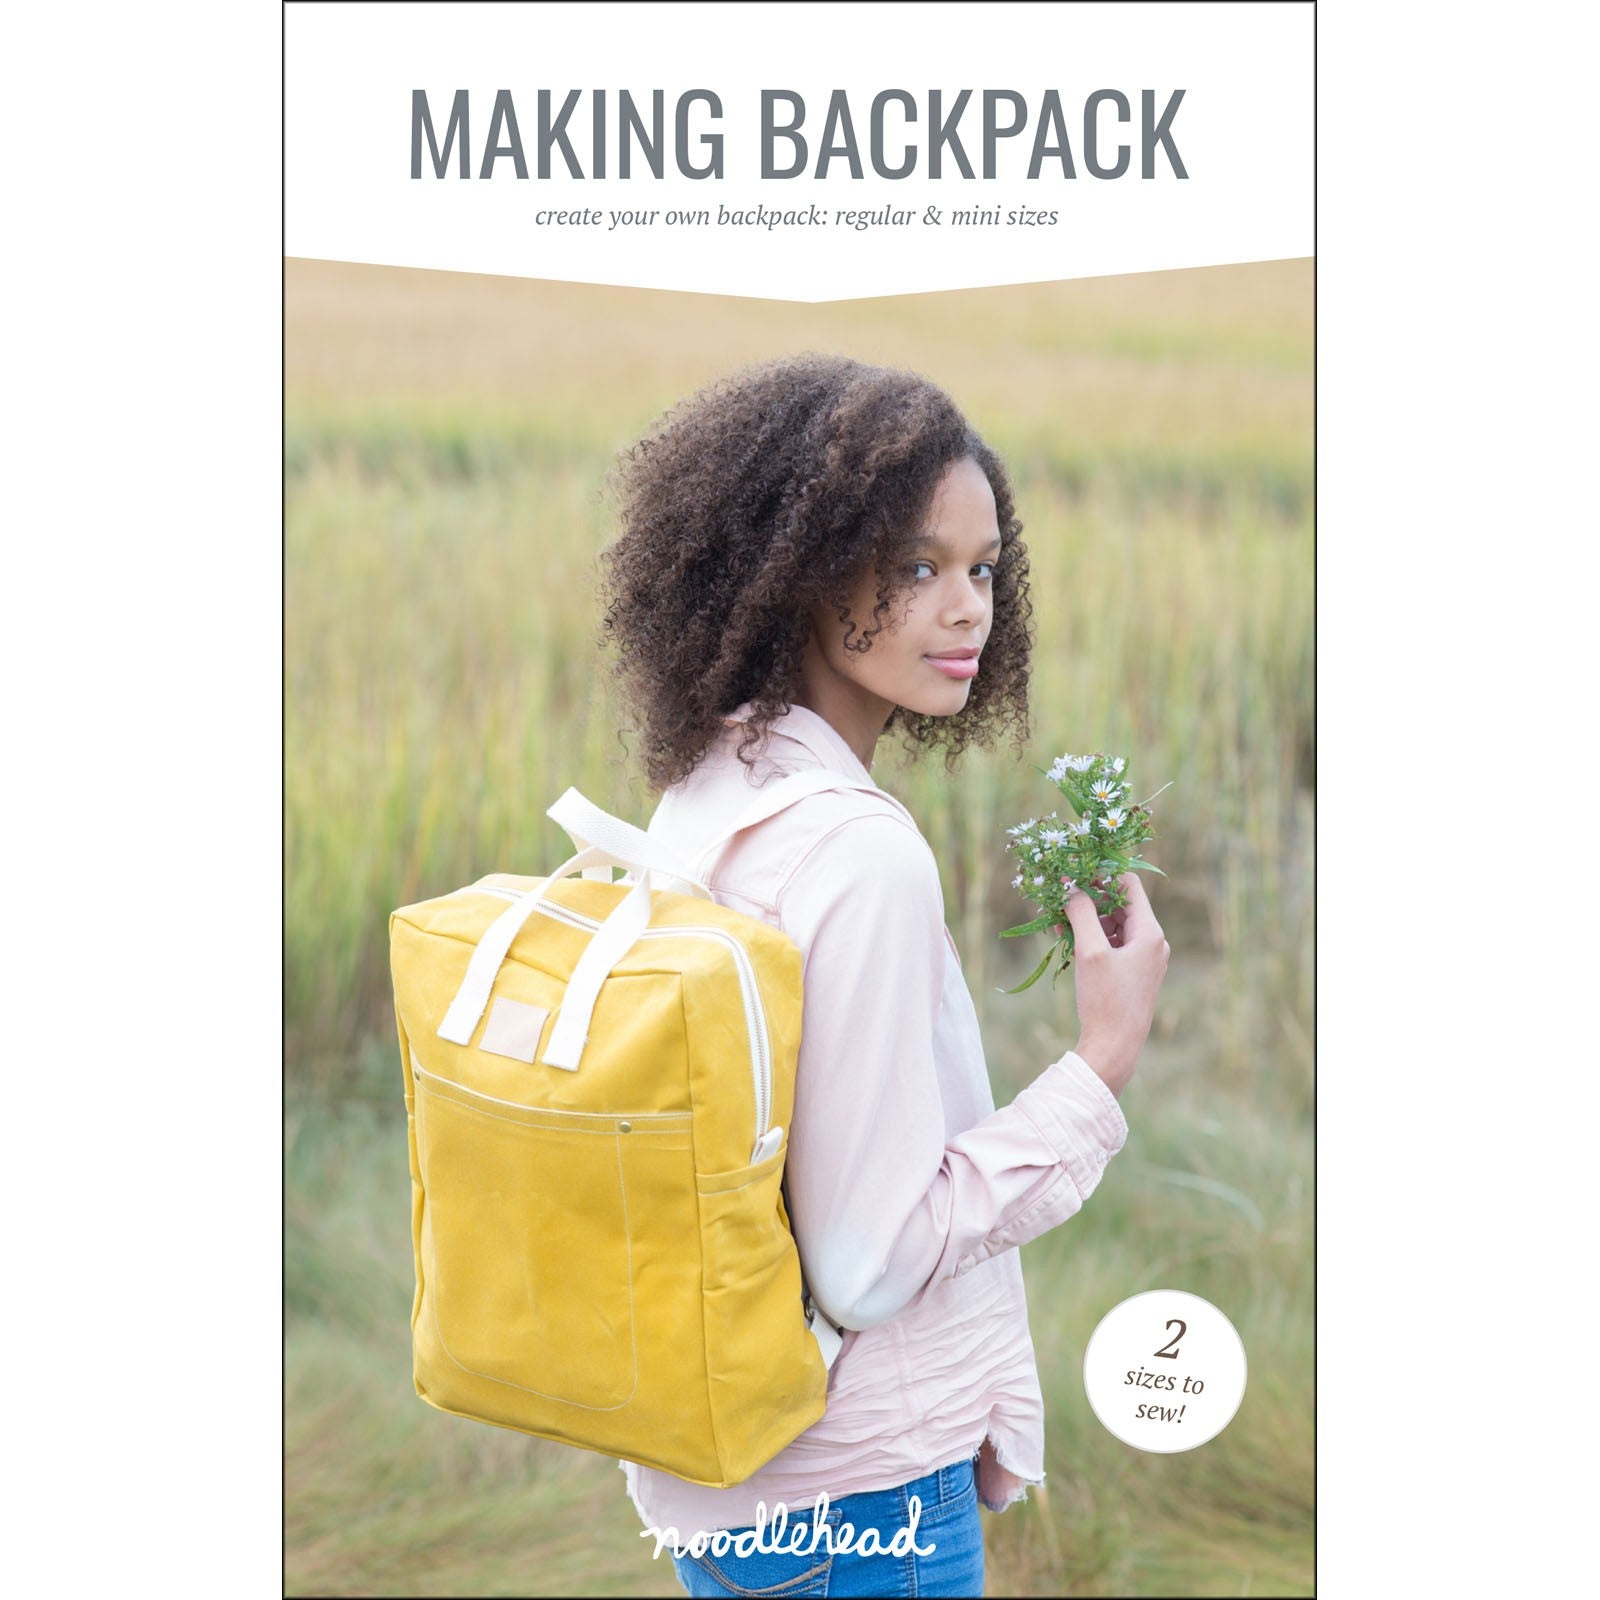 Making Backpack